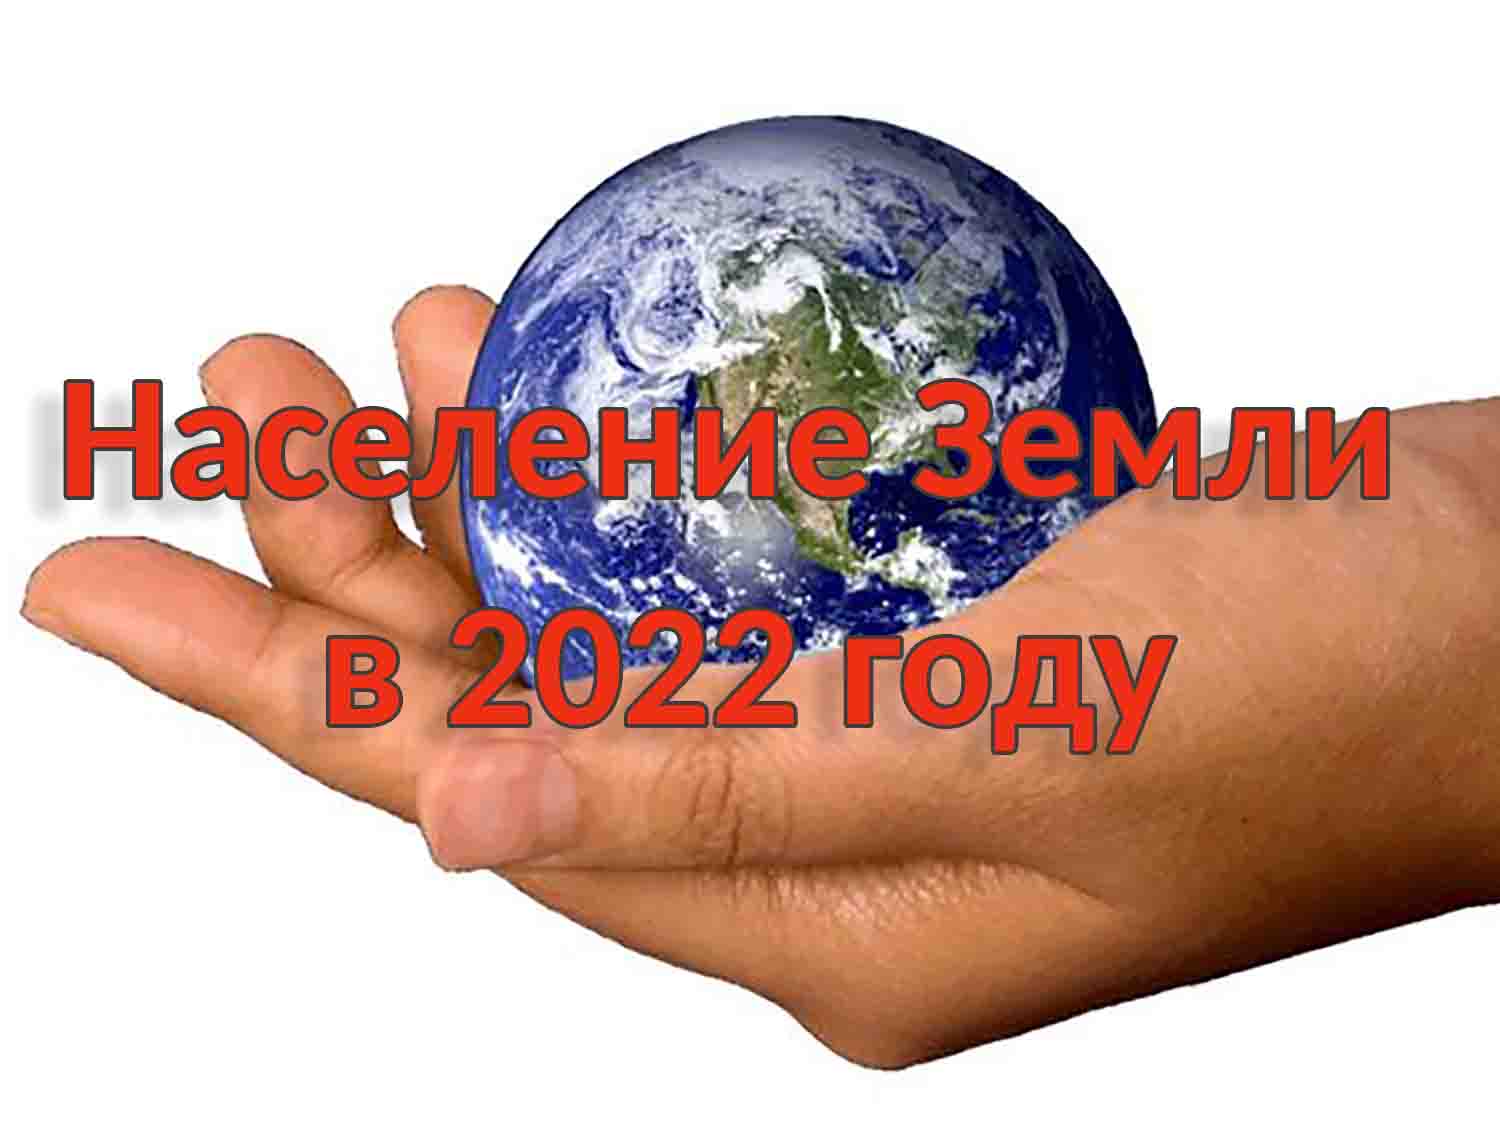 Население Земли в 2022 году